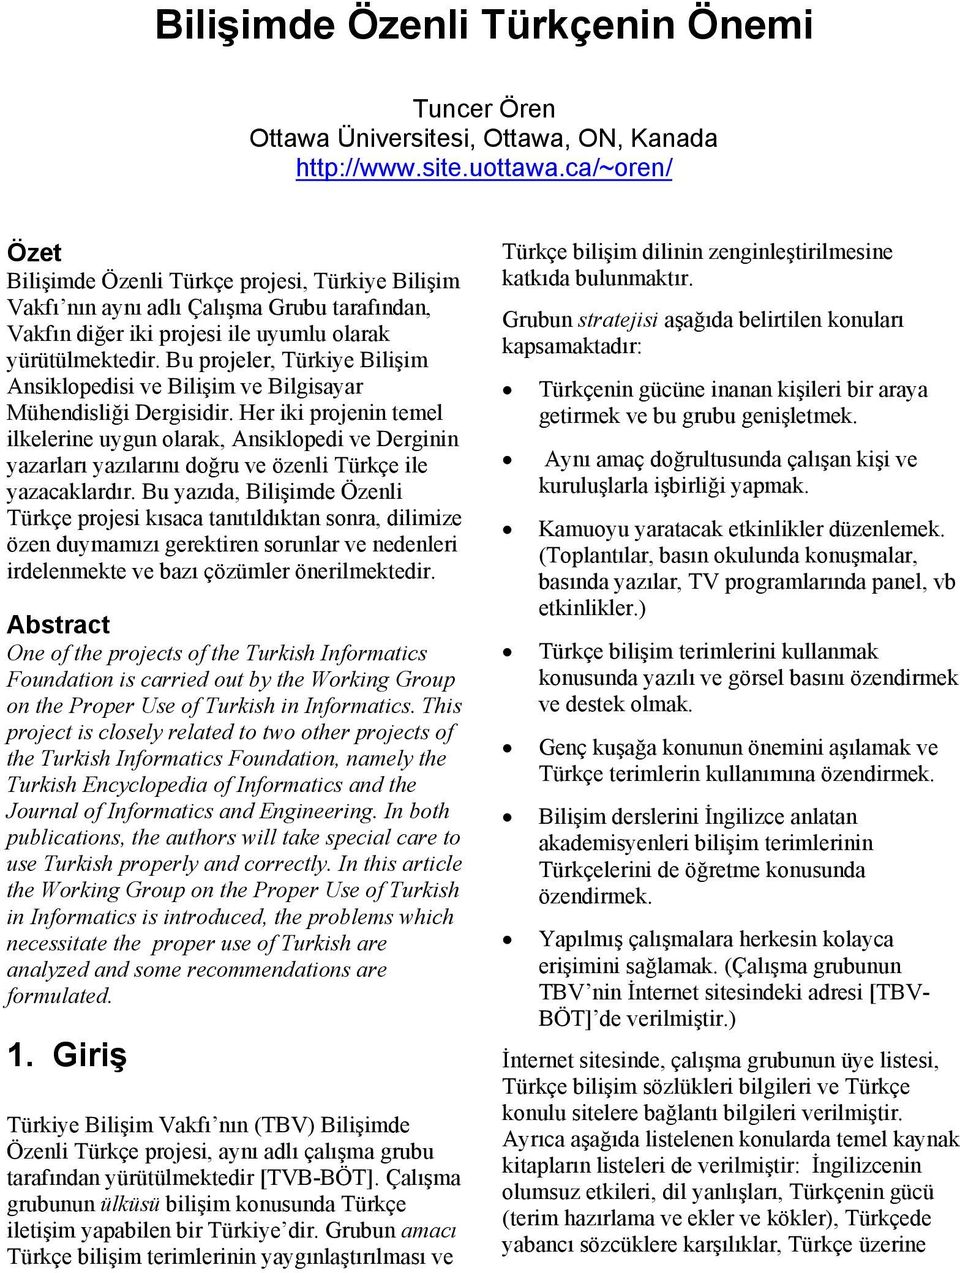 Bu projeler, Türkiye Bilişim Ansiklopedisi ve Bilişim ve Bilgisayar Mühendisliği Dergisidir.